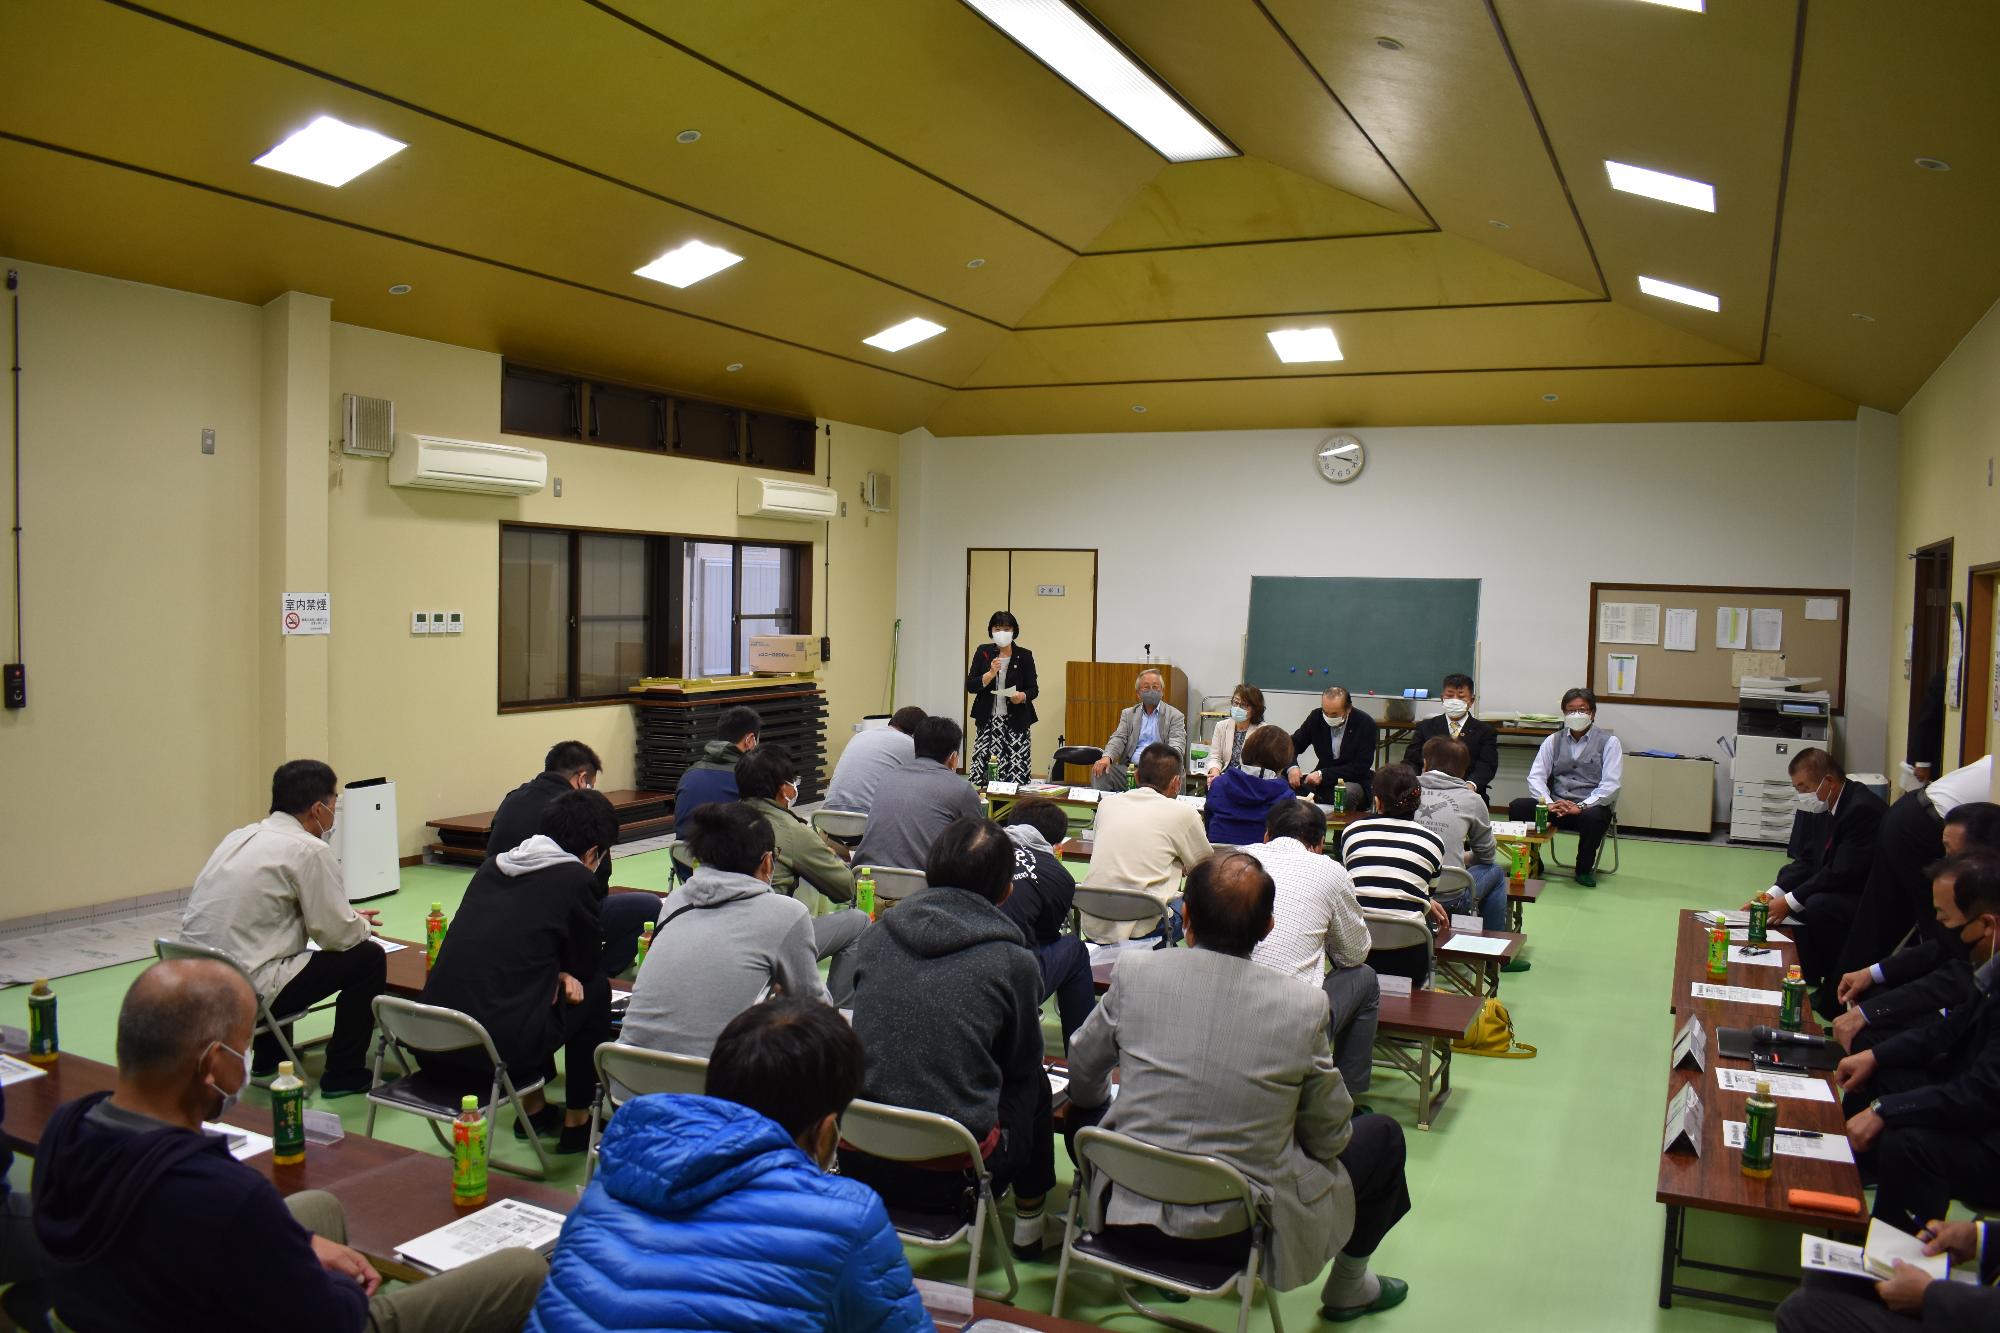 山田自治会で立って説明する議員と真剣に聞き入る町民の写真